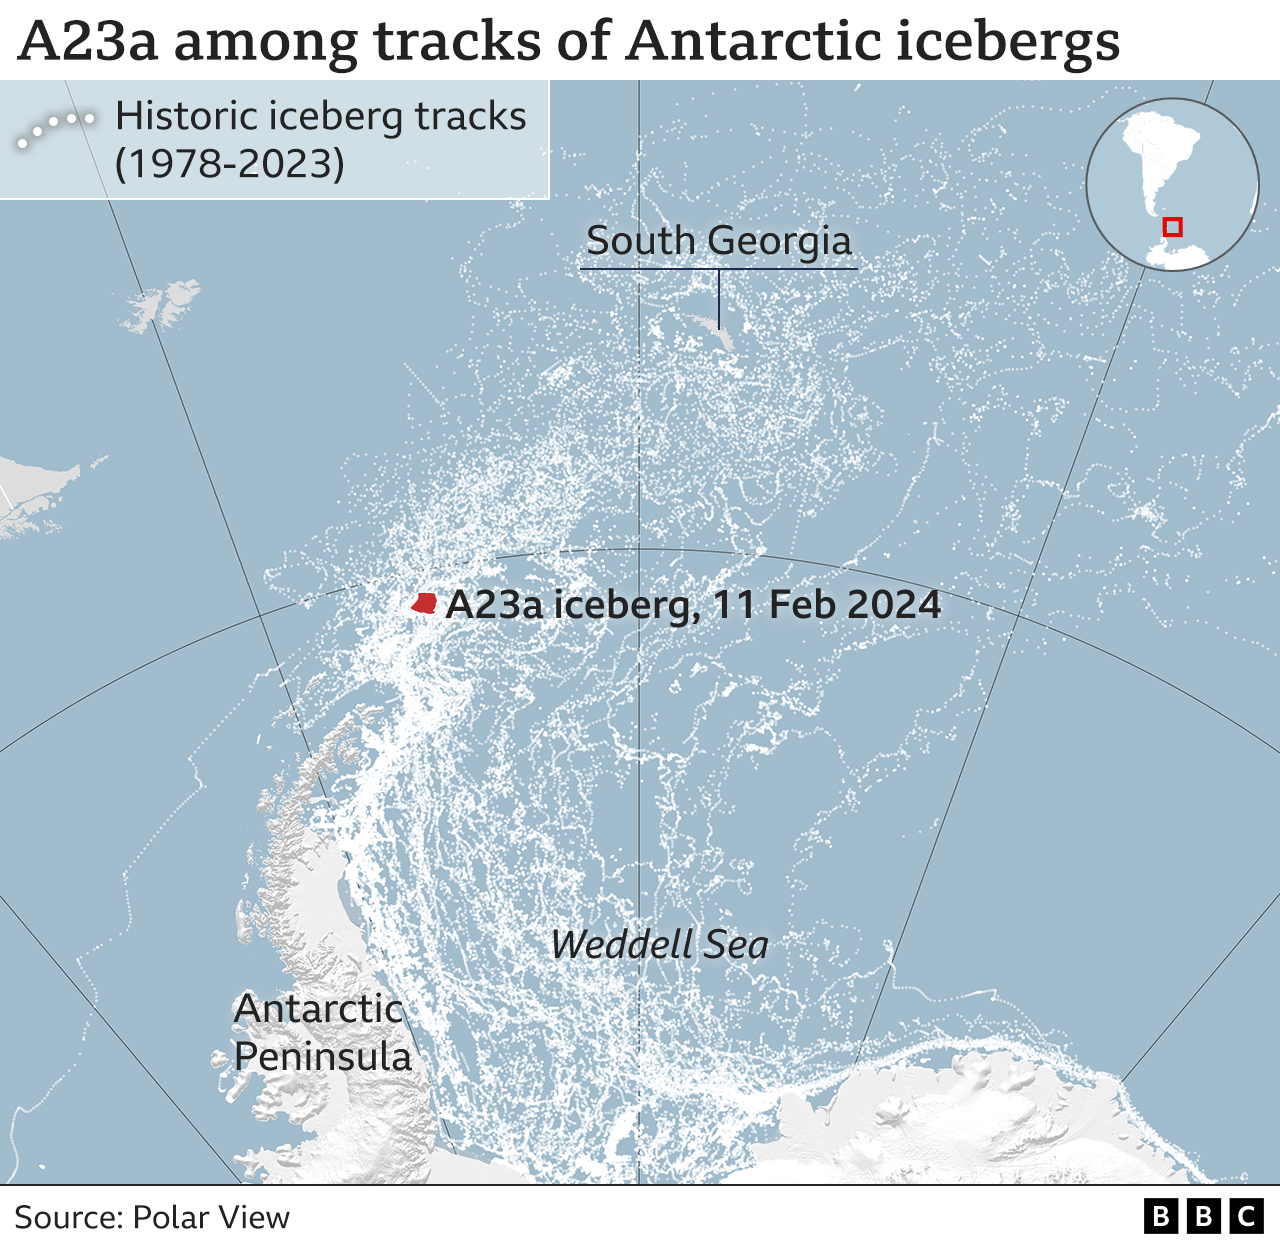 Iceberg tracks